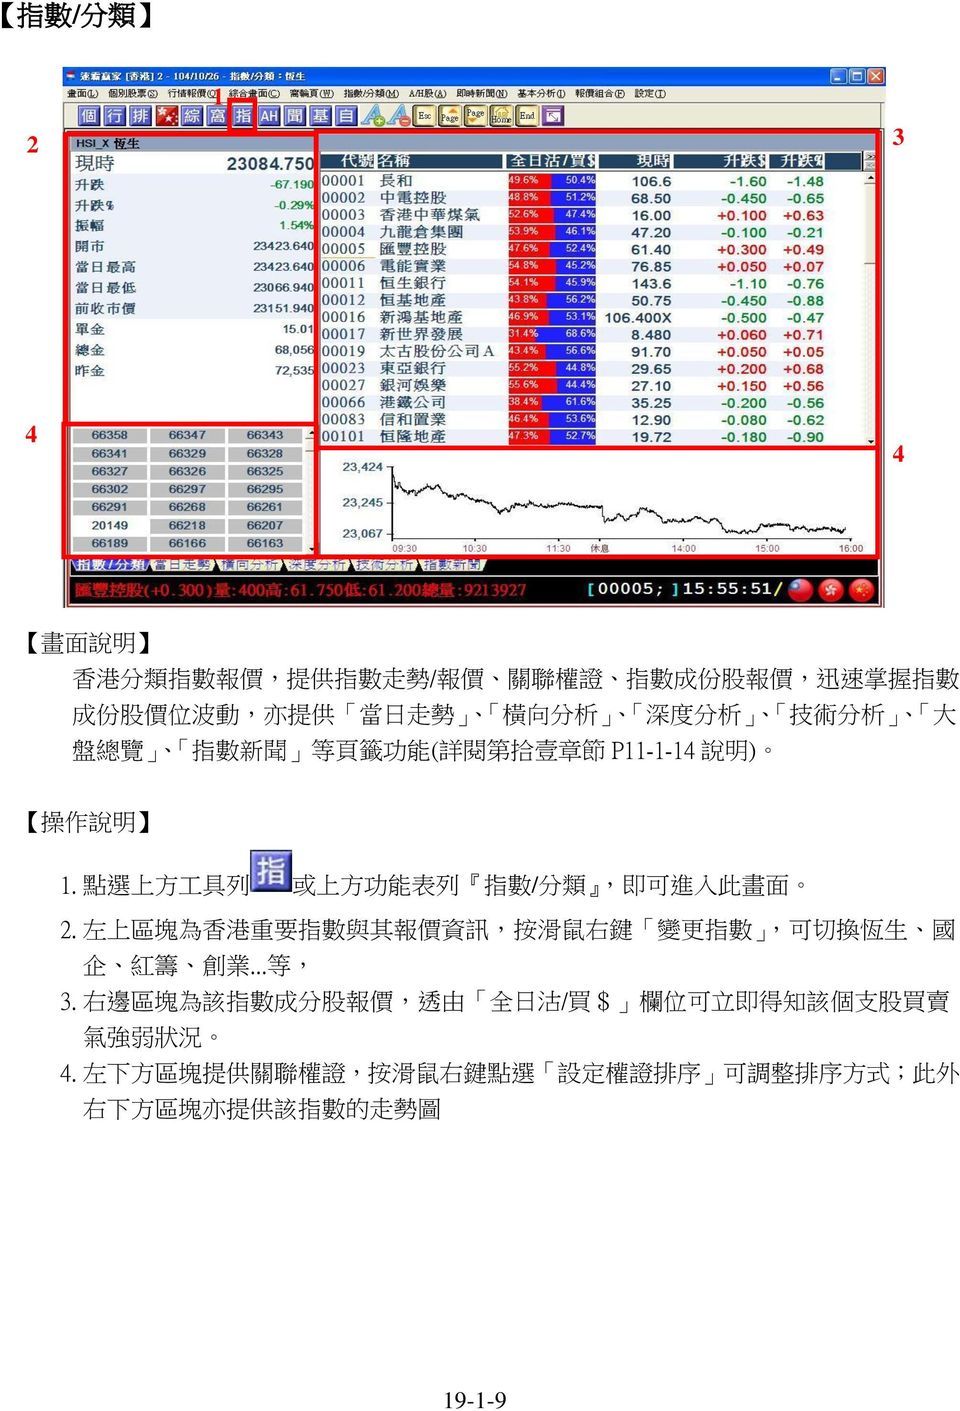 左 上 區 塊 為 香 港 重 要 指 數 與 其 報 價 資 訊, 按 滑 鼠 右 鍵 變 更 指 數, 可 切 換 恆 生 國 企 紅 籌 創 業... 等, 3.